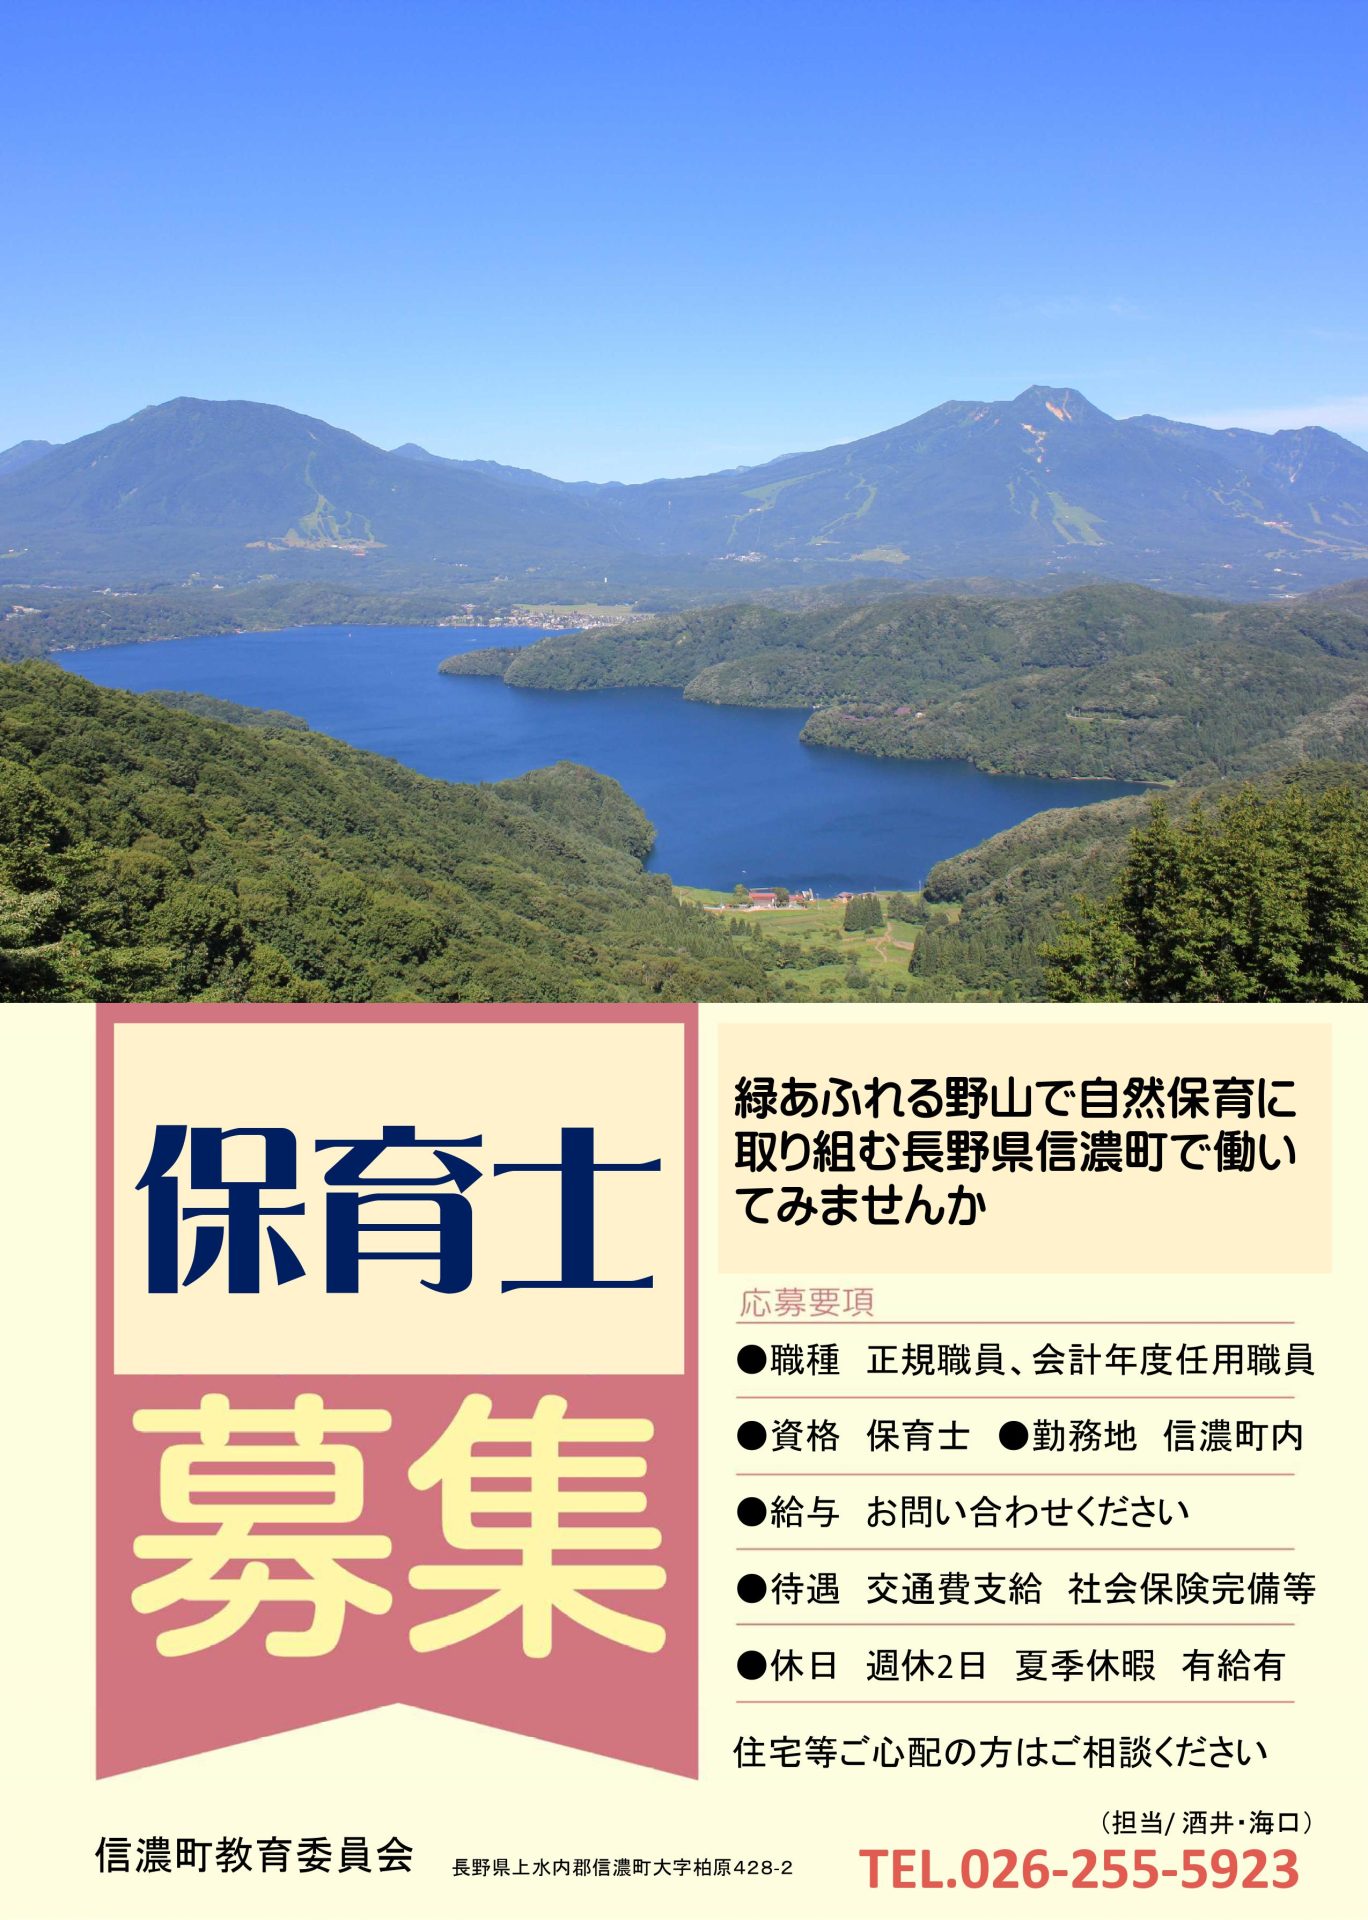 保育士緊急募集！緑あふれる野山で自然保育に 取り組む長野県信濃町で働い てみませんか | 地域のトピックス